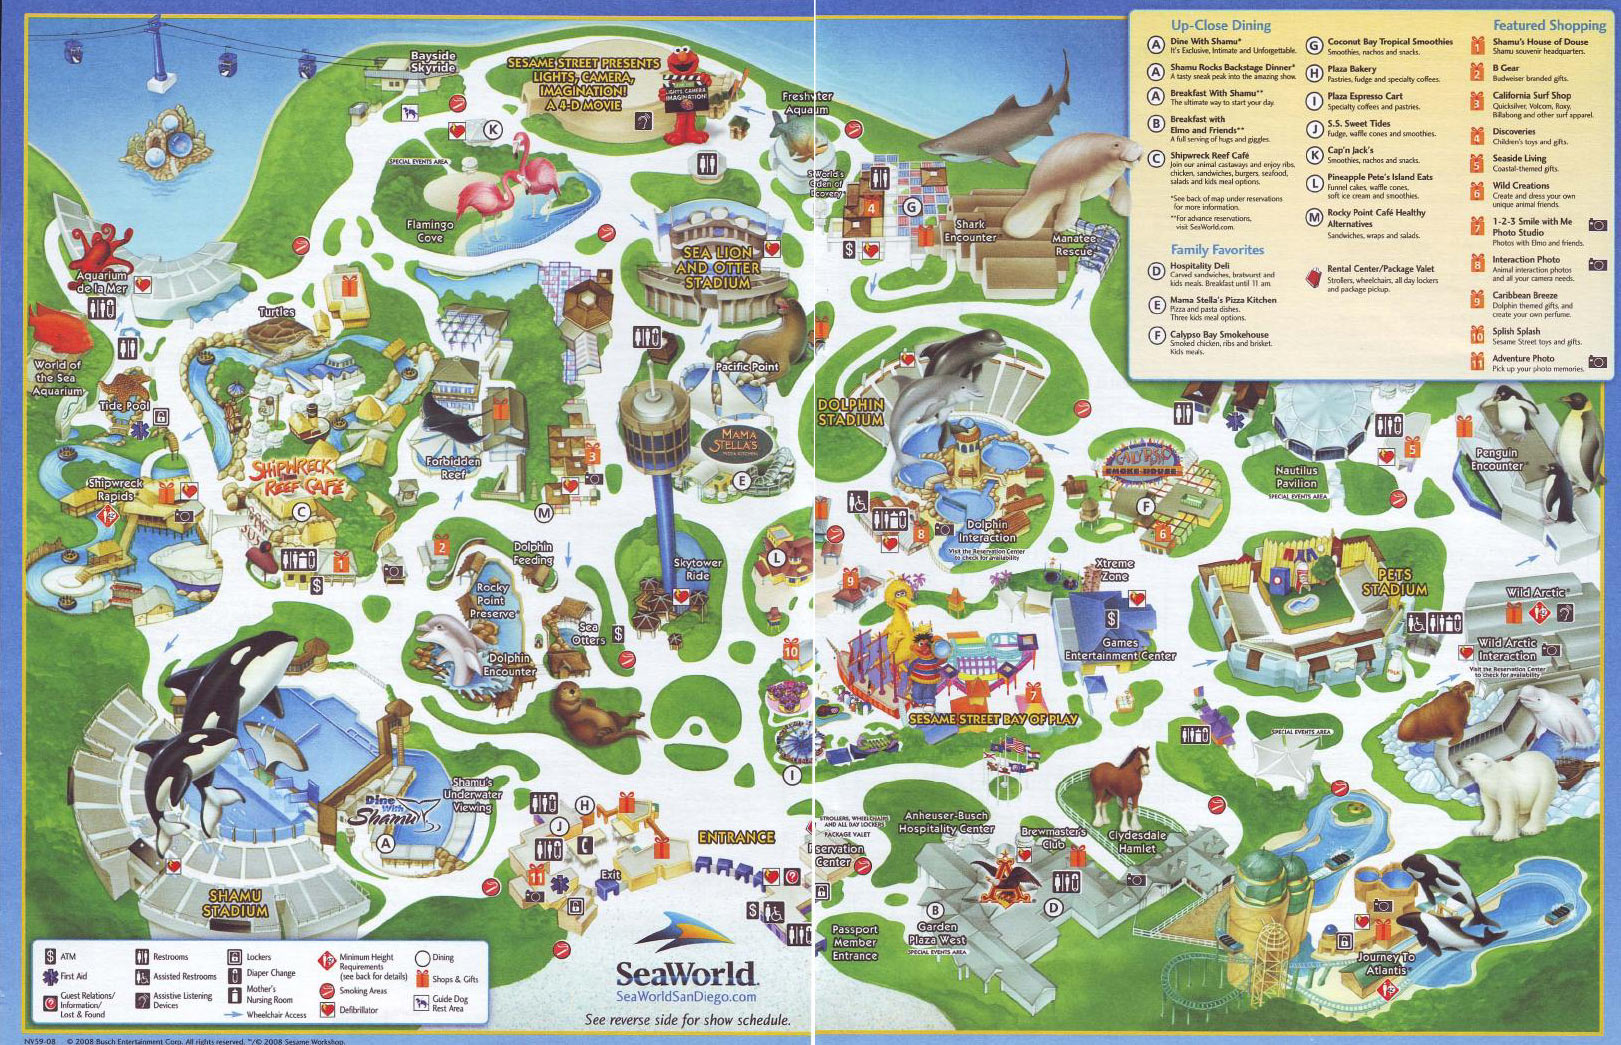 seaworld map san diego Theme Park Brochures Sea World San Diego Theme Park Brochures seaworld map san diego